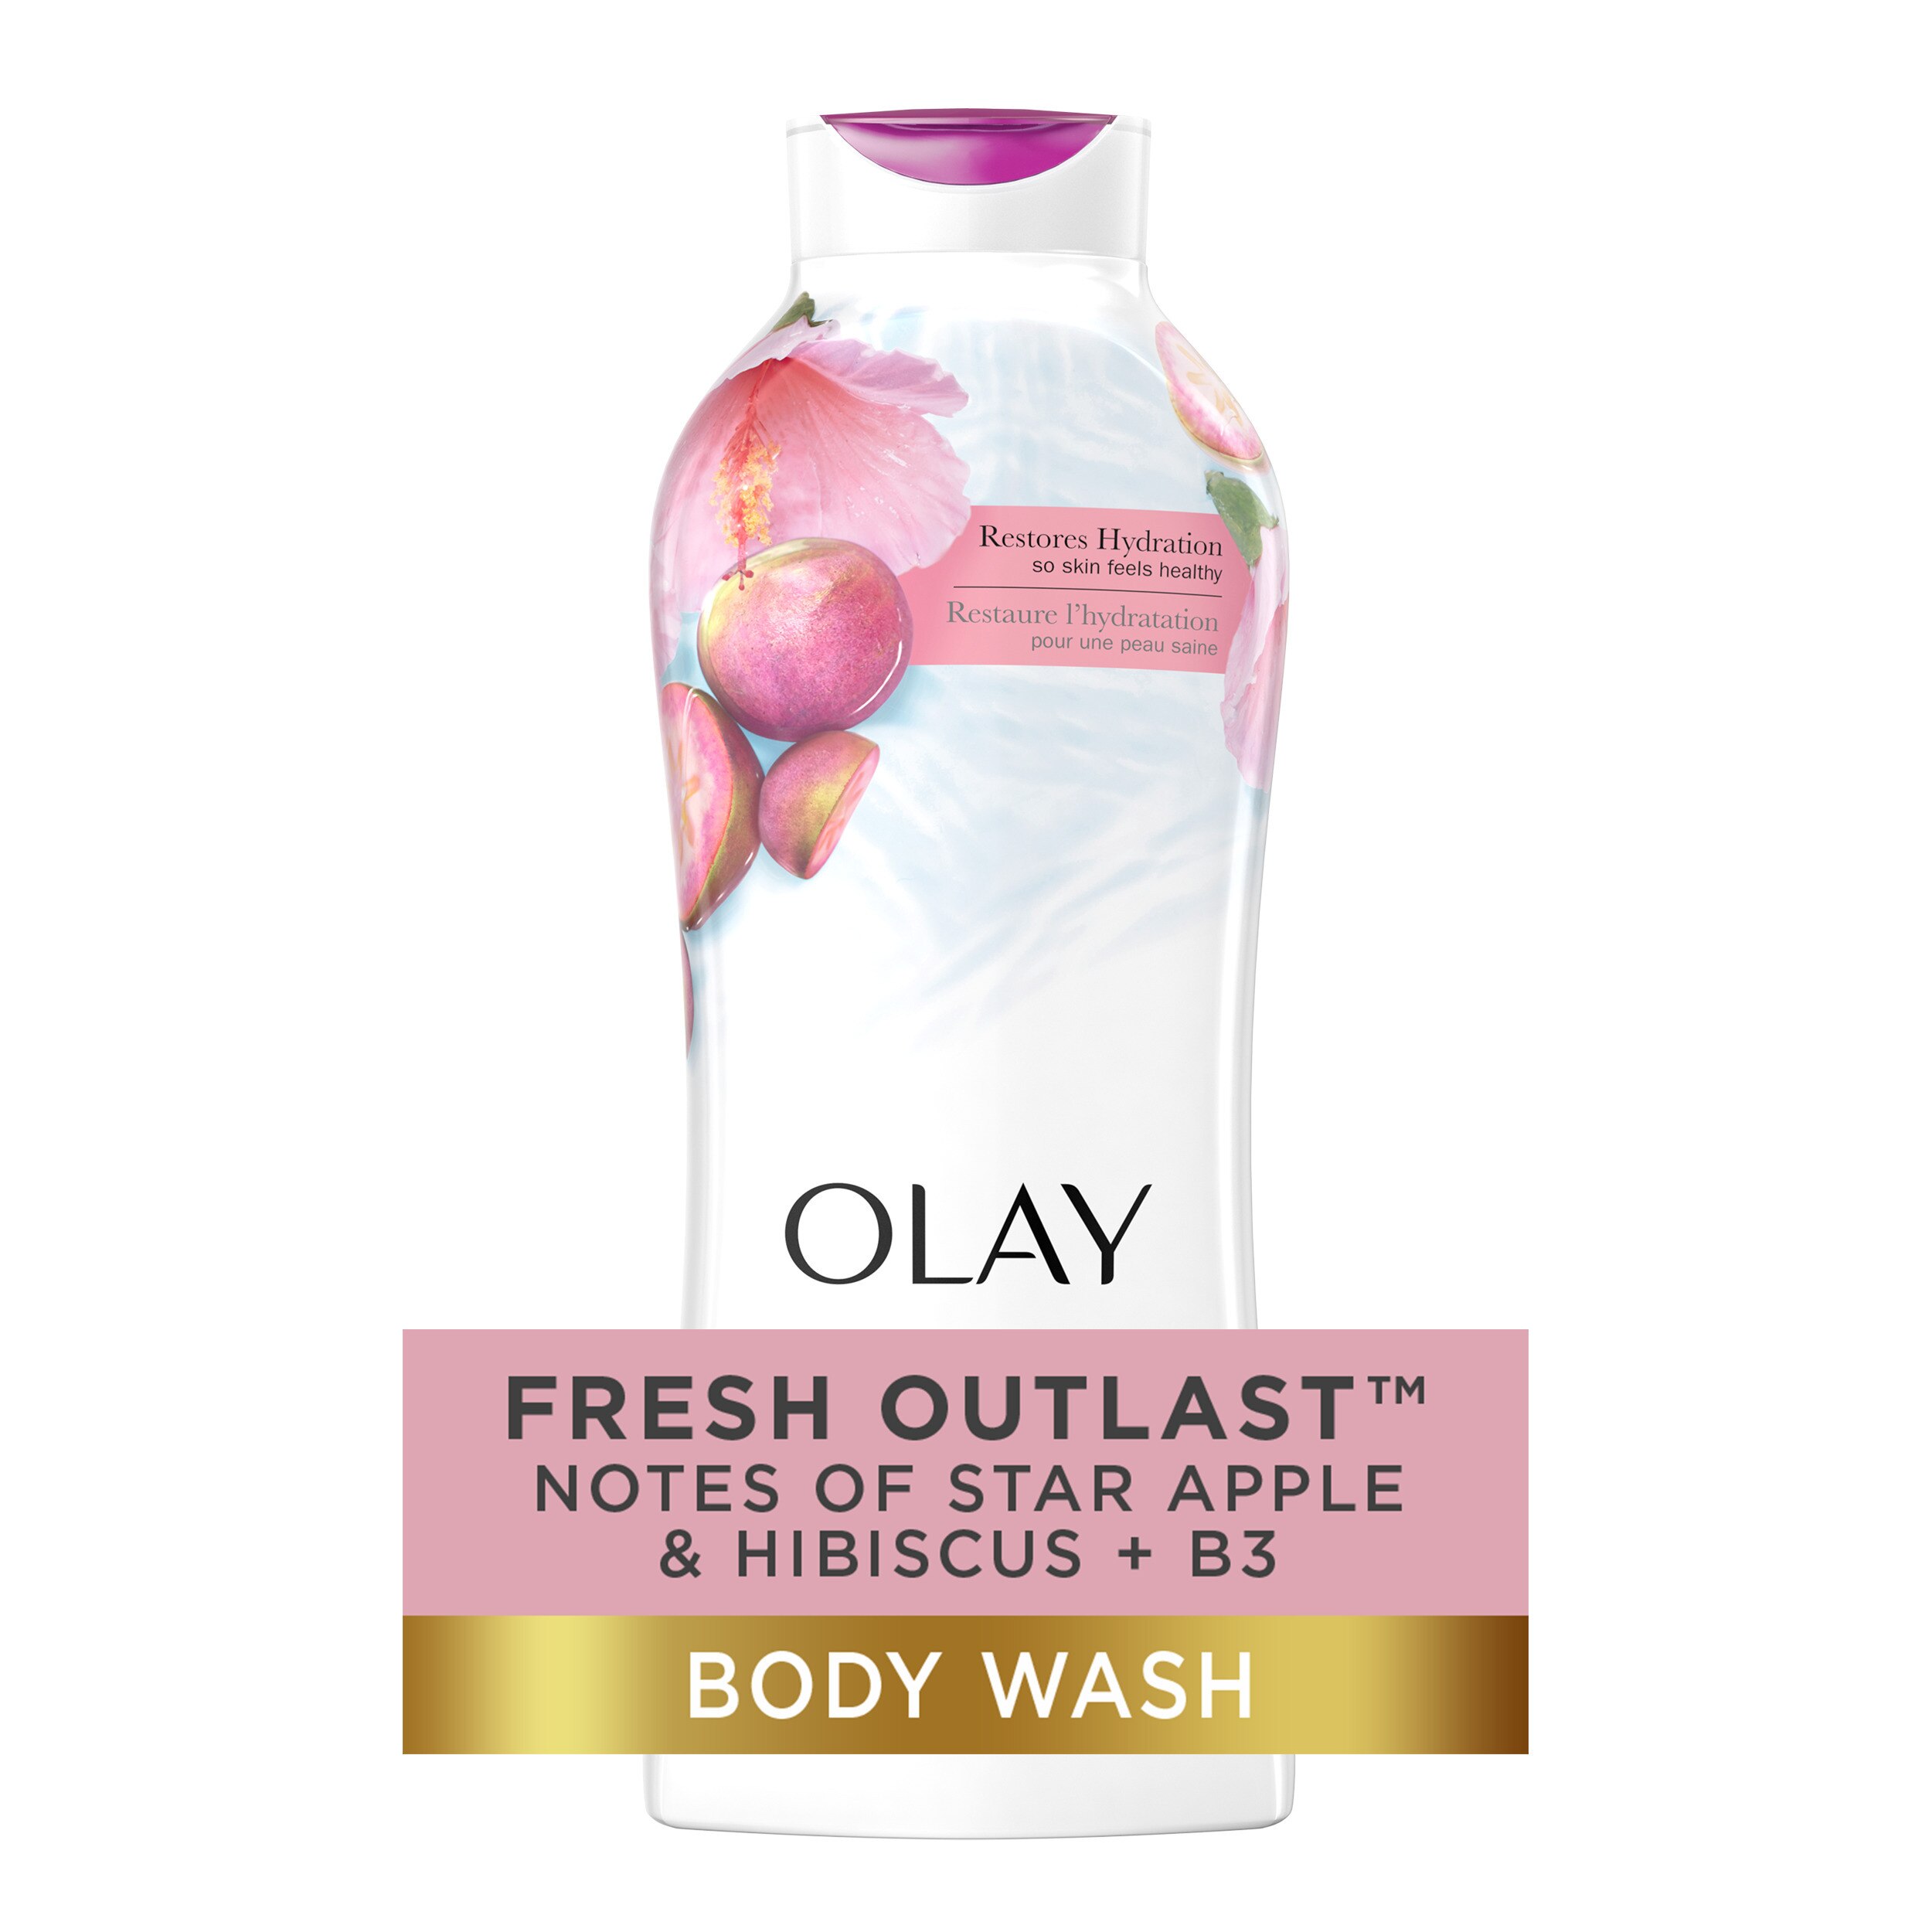 Olay Fresh Outlast Body Wash, Star Apple & Hibiscus, 22 Oz , CVS